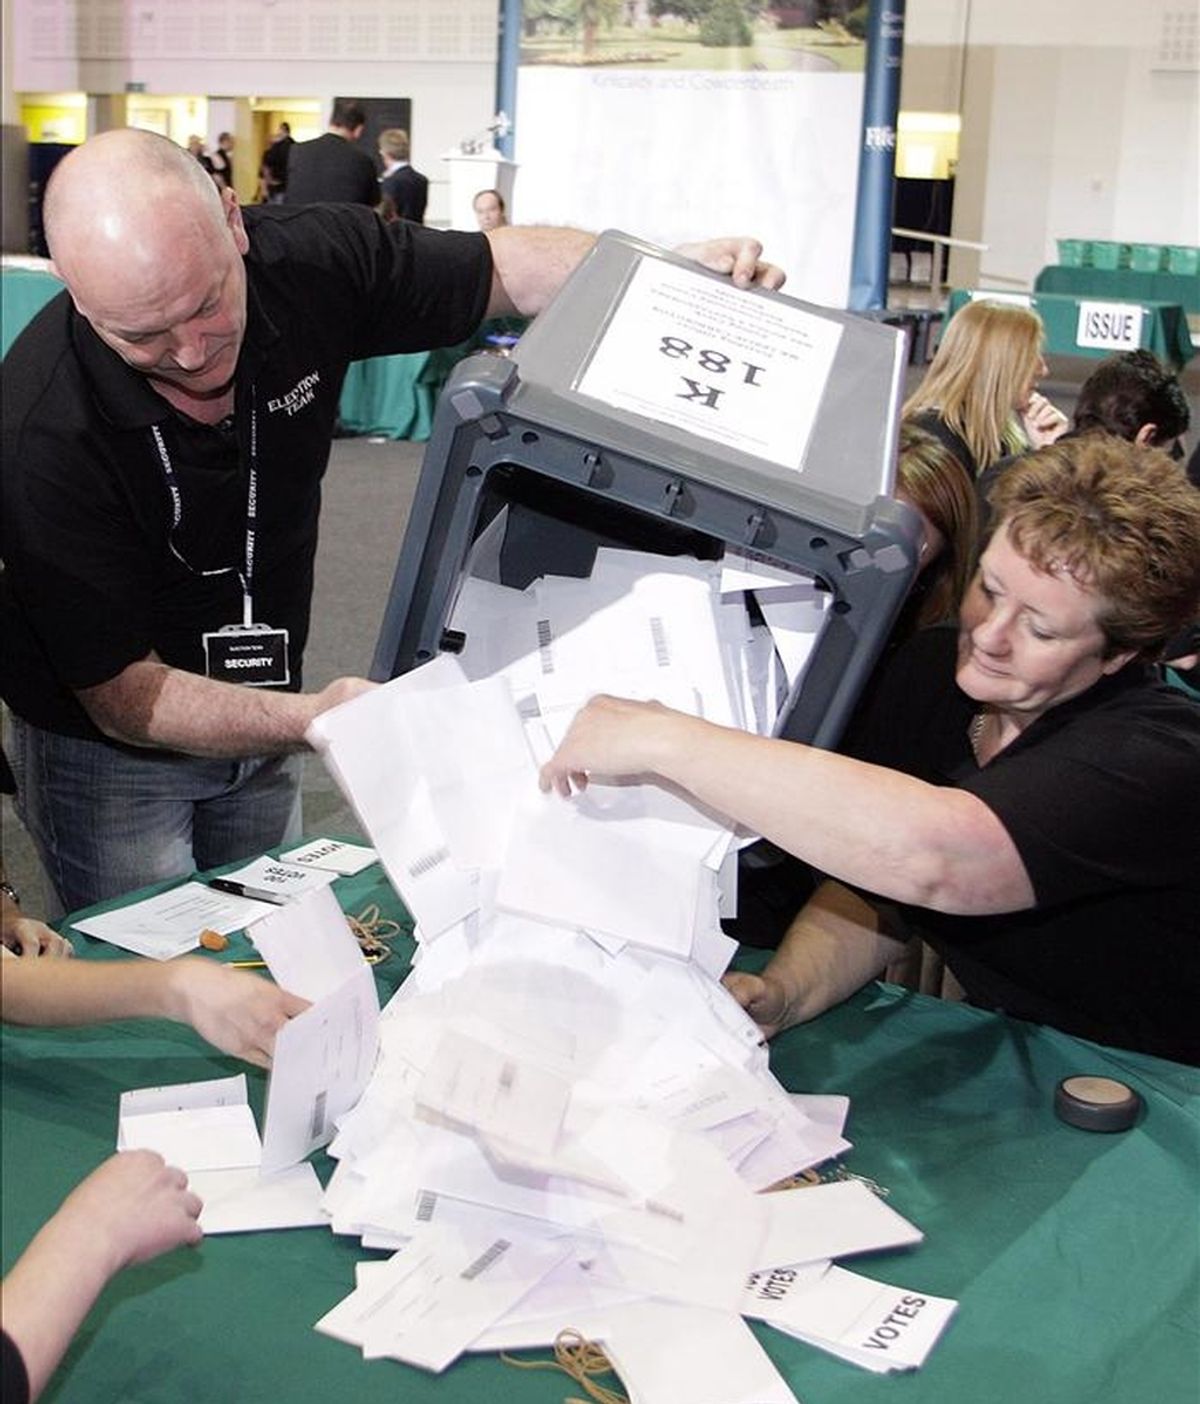 Jueces electorales inician el recuento de votos tras unas elecciones en el Reino Unido. EFE/Archivo